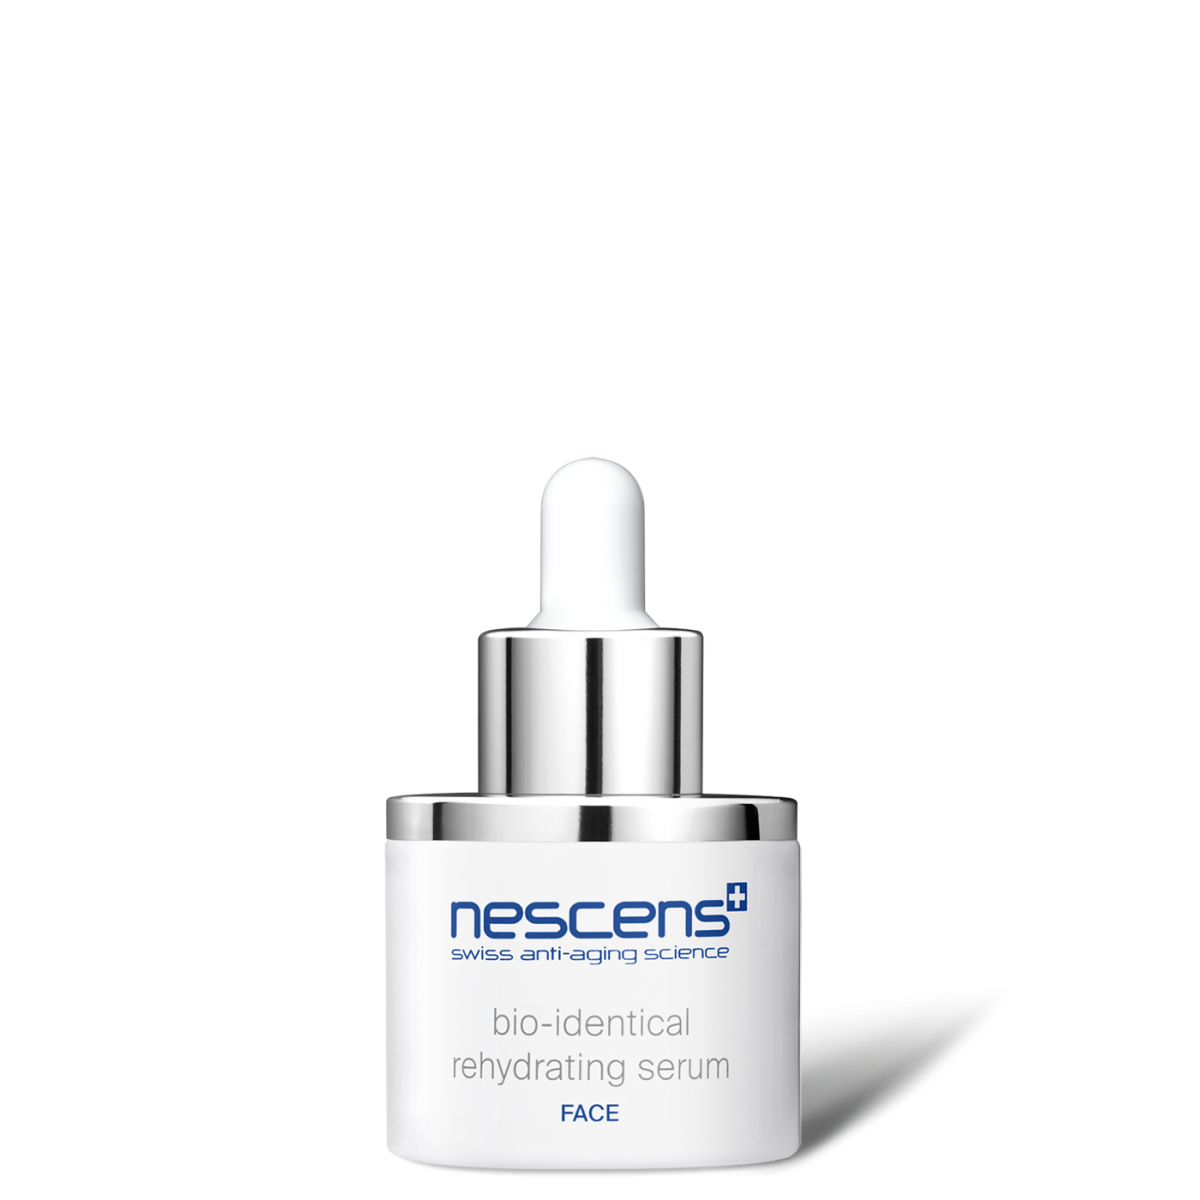 Nescens - Bio-Identical Rehydrating Serum 